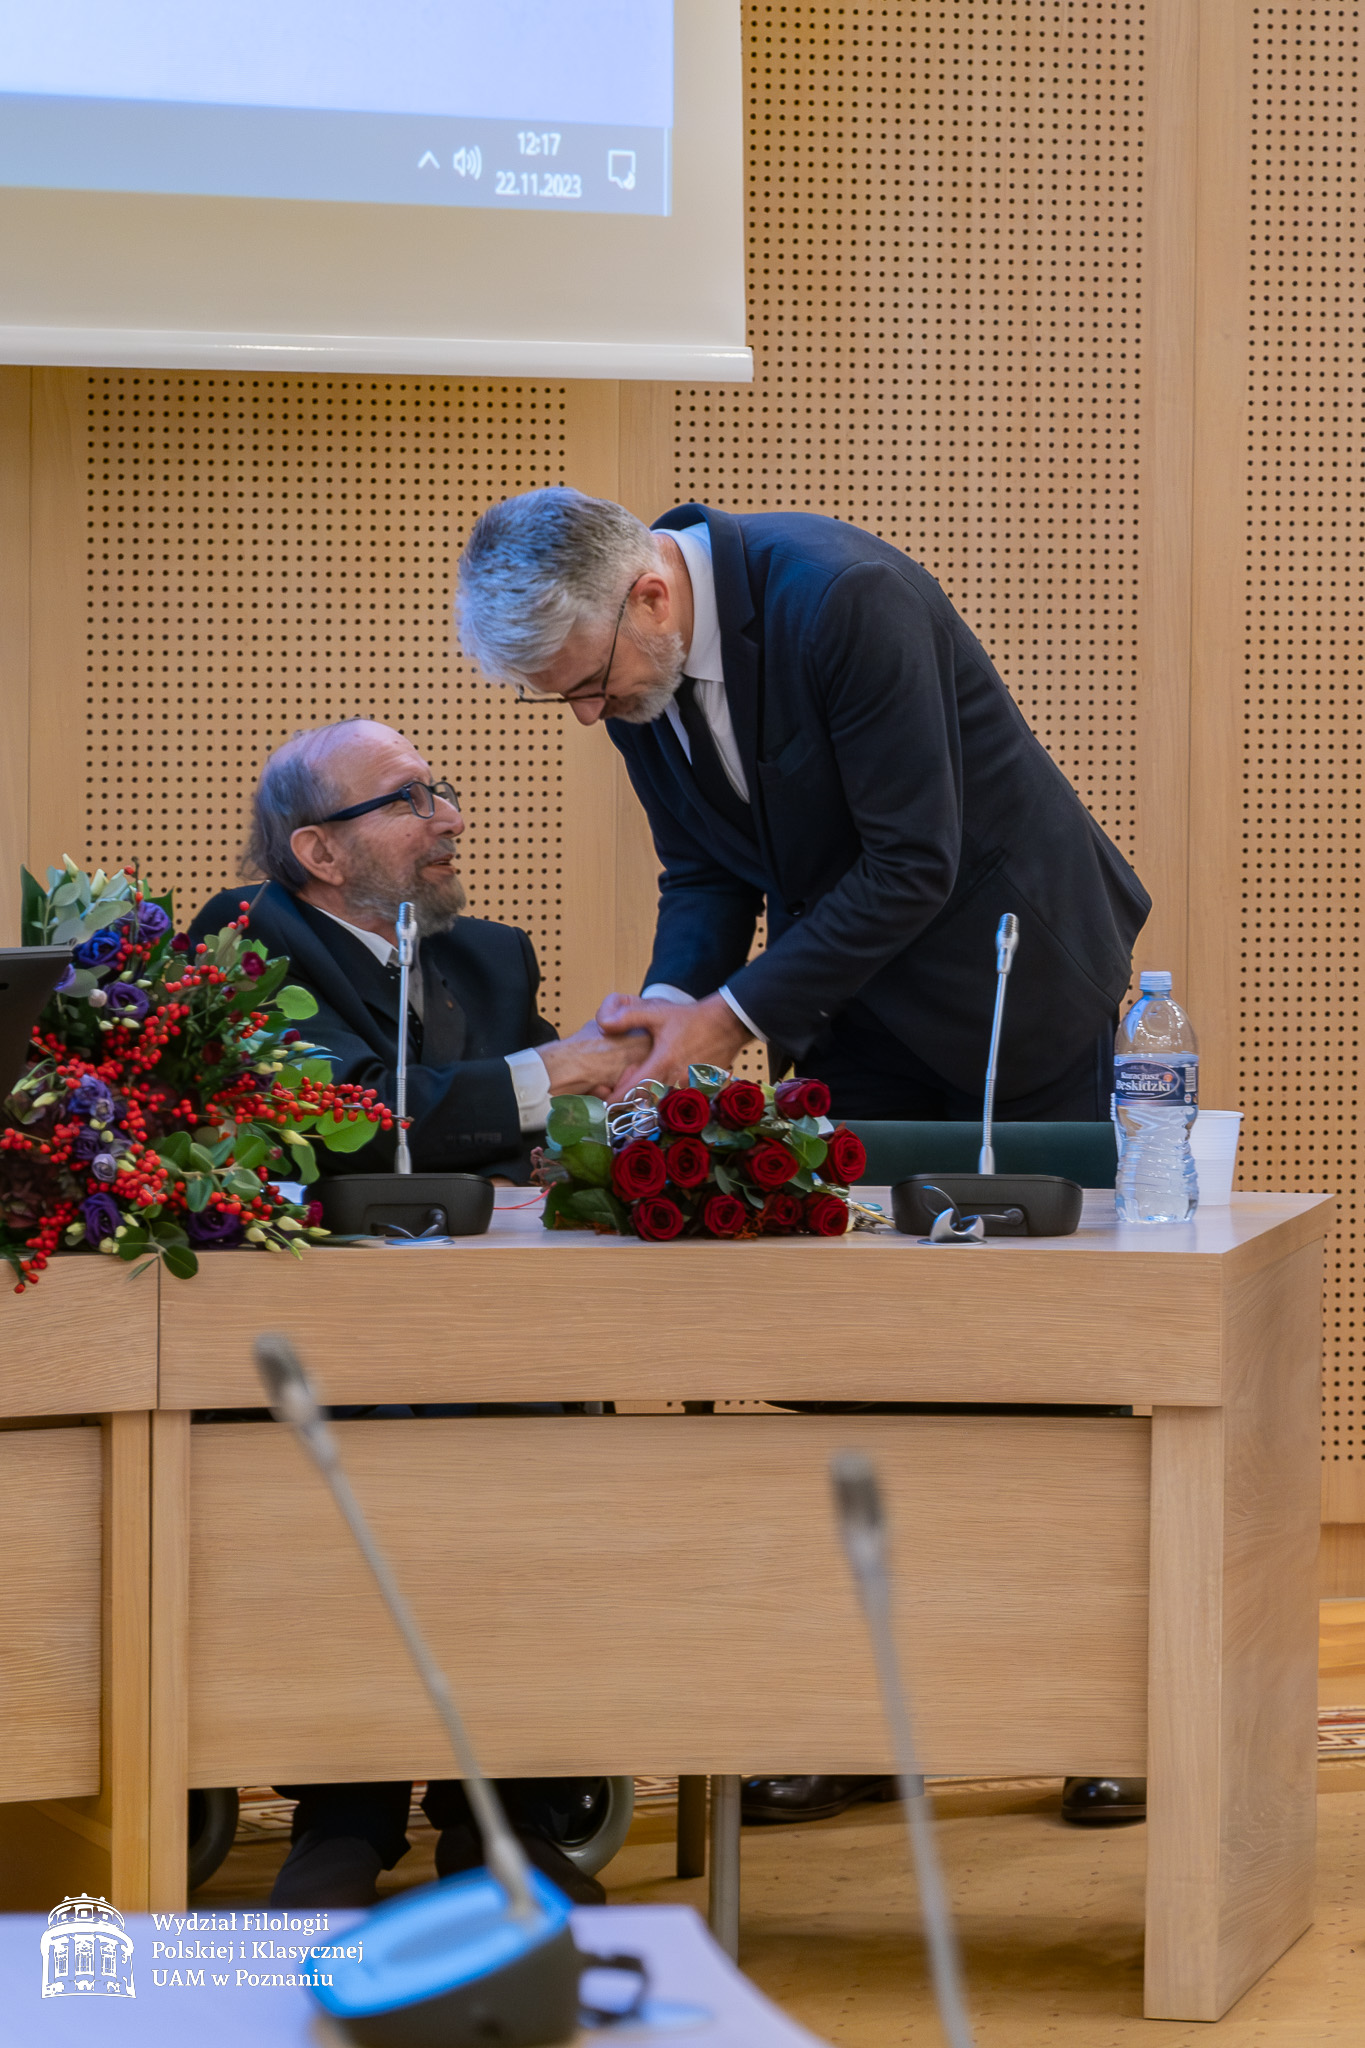 Prof. Jerzy Borowczyk kłania się przed Jubilatem, ściskając mu serdecznie dłoń.